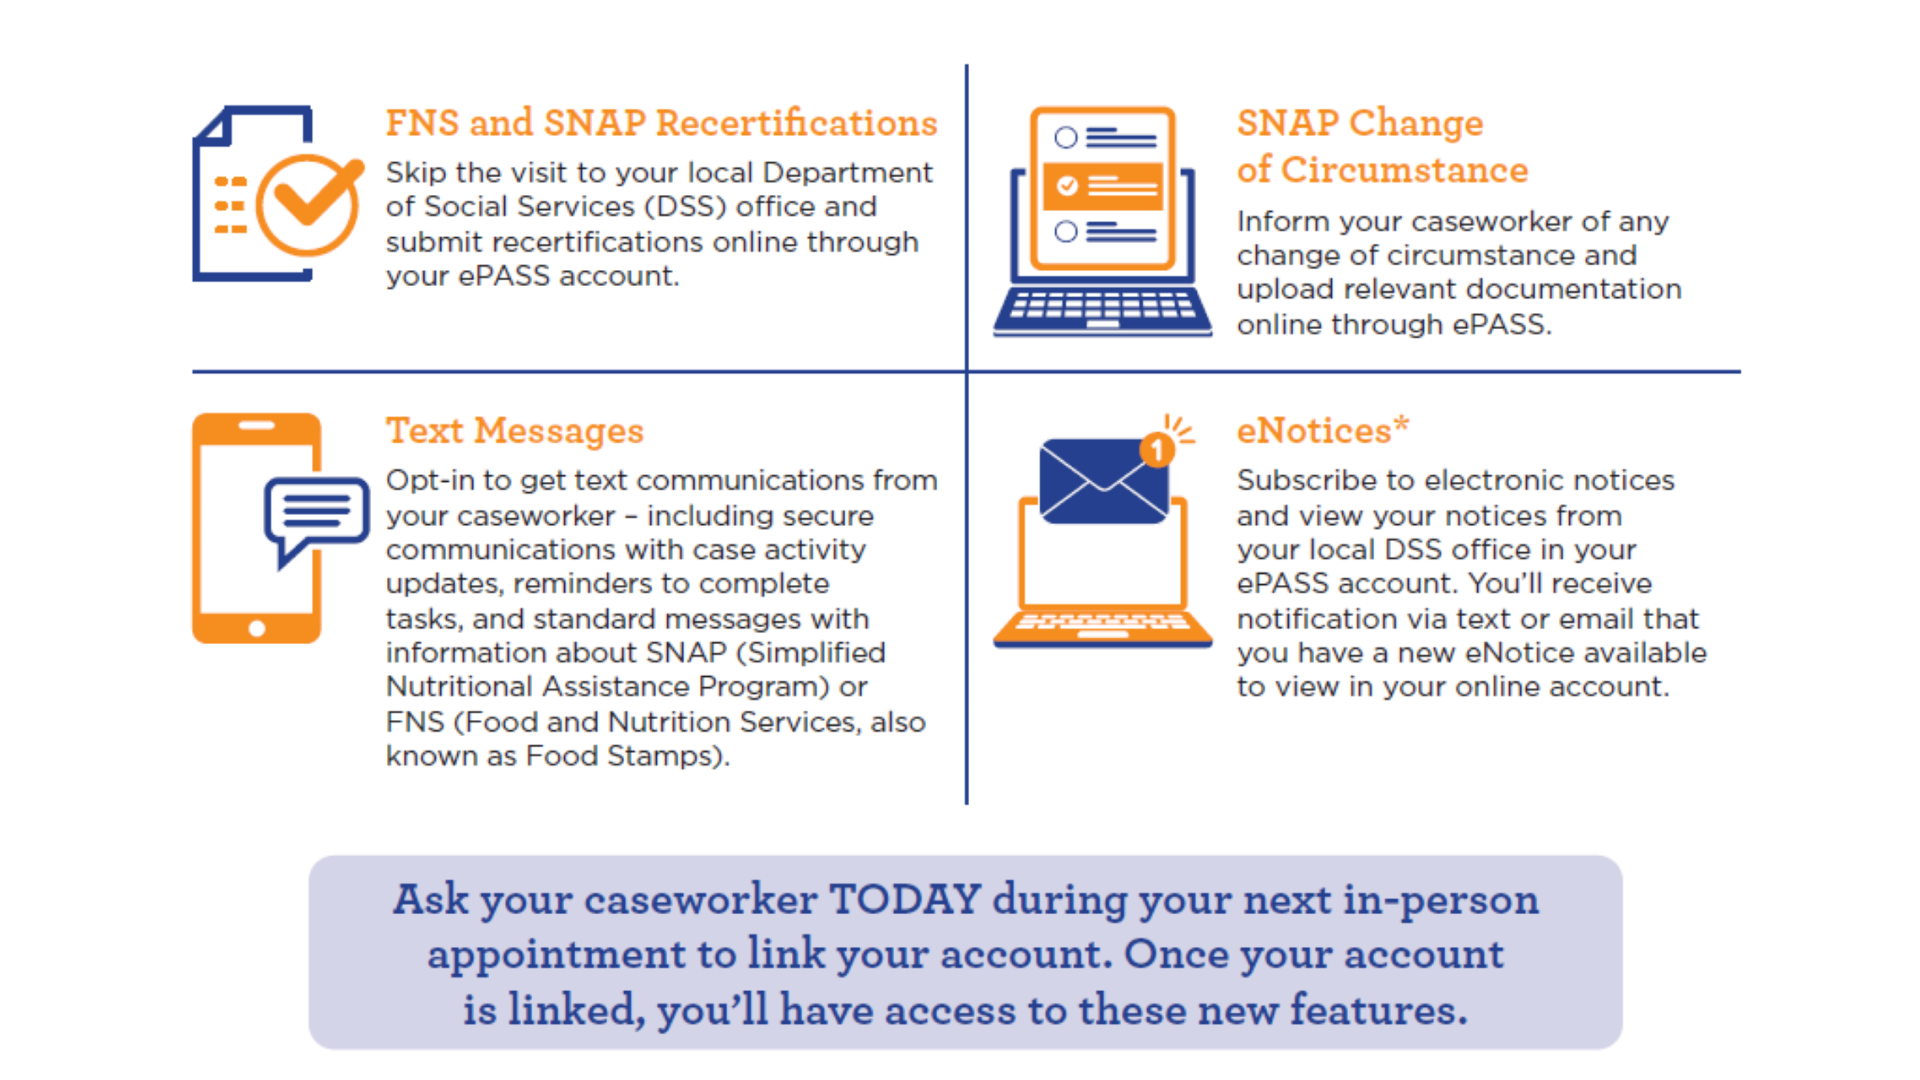 New Online ePASS Account Features